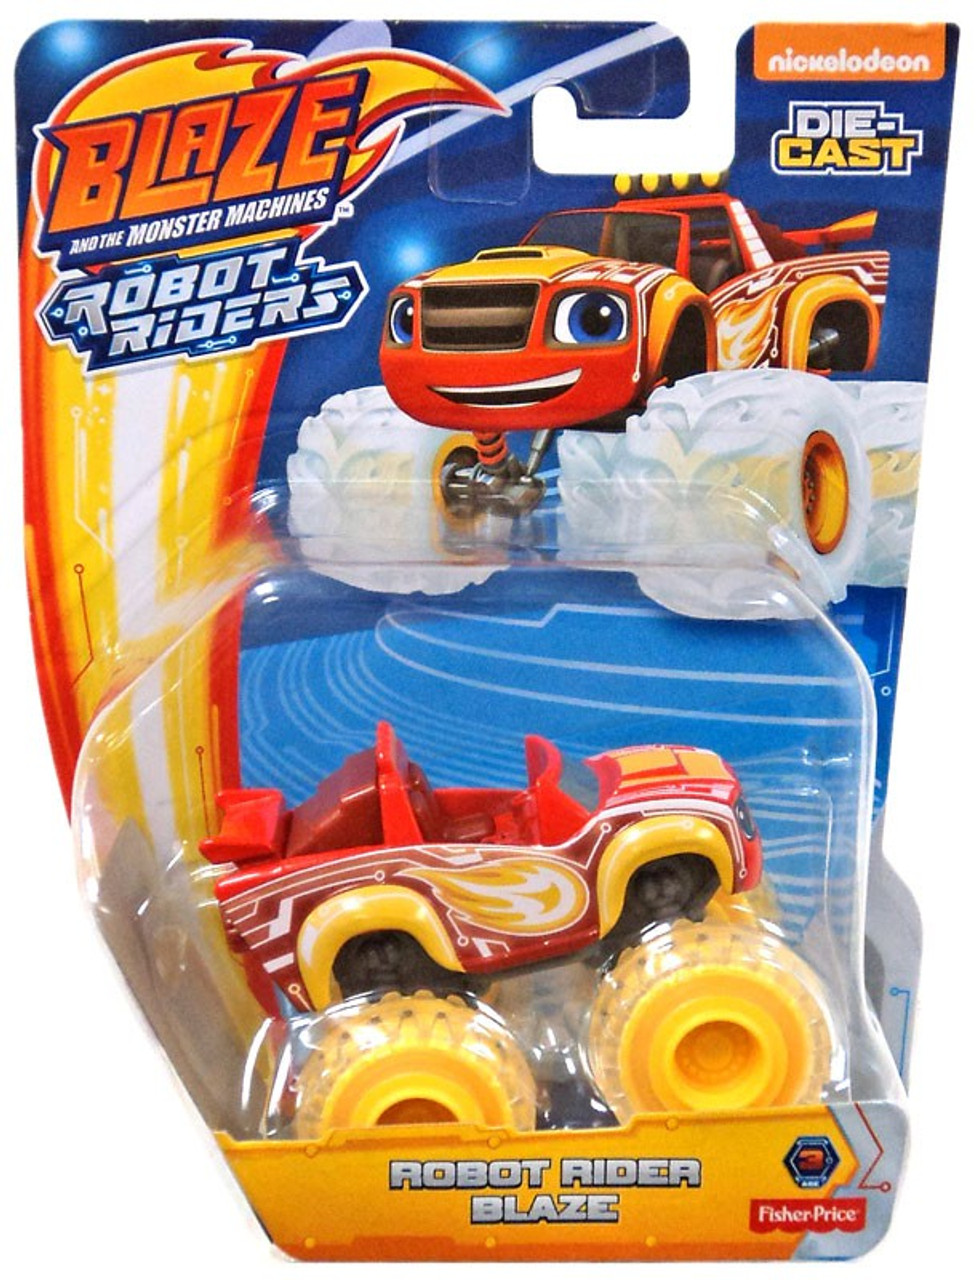 robot rider blaze toy